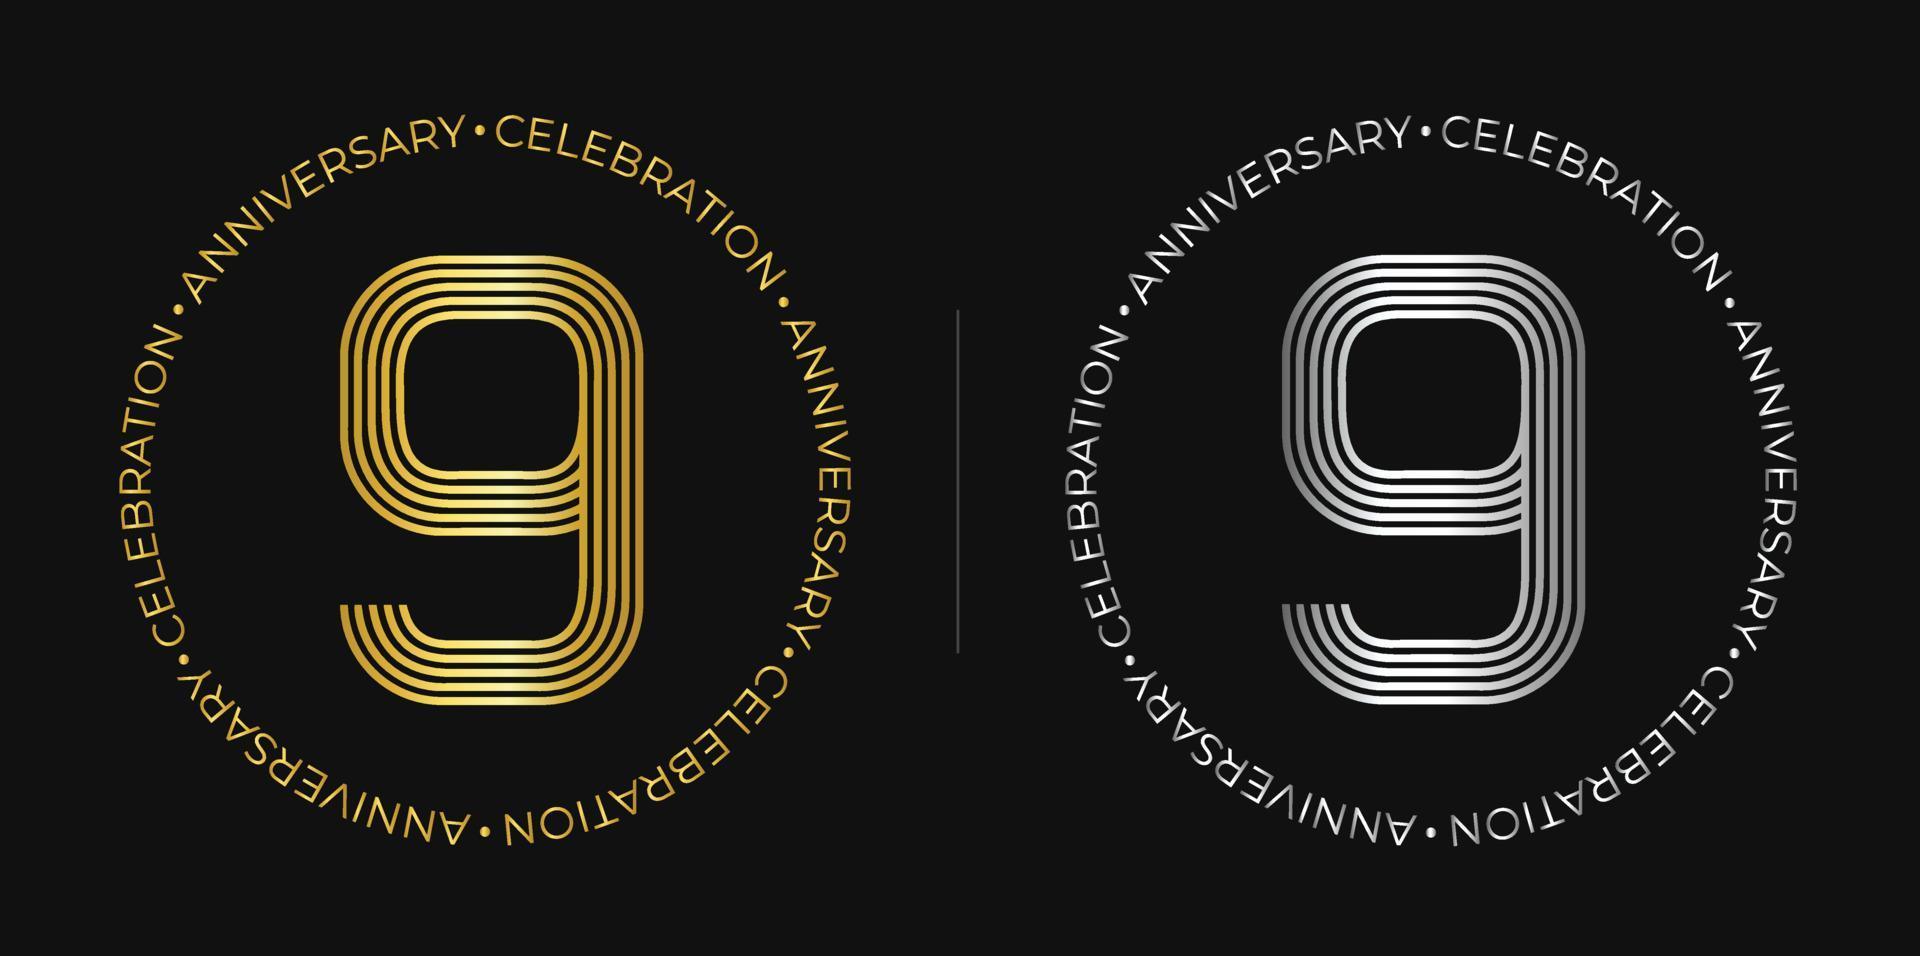 9º cumpleaños. Pancarta de celebración de aniversario de nueve años en colores dorado y plateado. logotipo circular con diseño de número original en líneas elegantes. vector